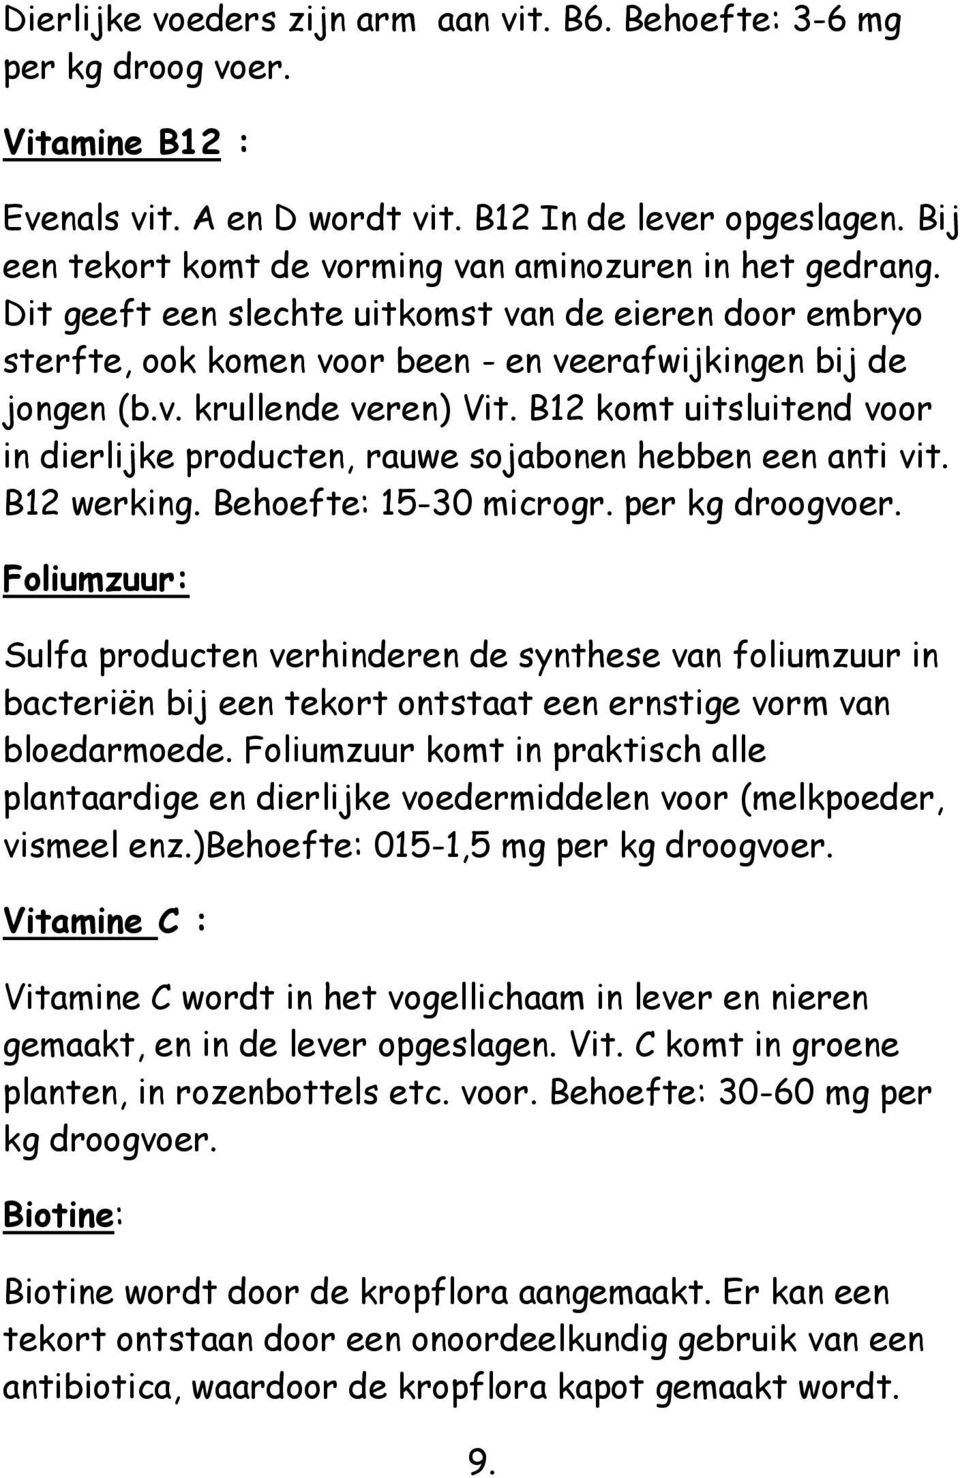 B12 komt uitsluitend voor in dierlijke producten, rauwe sojabonen hebben een anti vit. B12 werking. Behoefte: 15-30 microgr. per kg droogvoer.